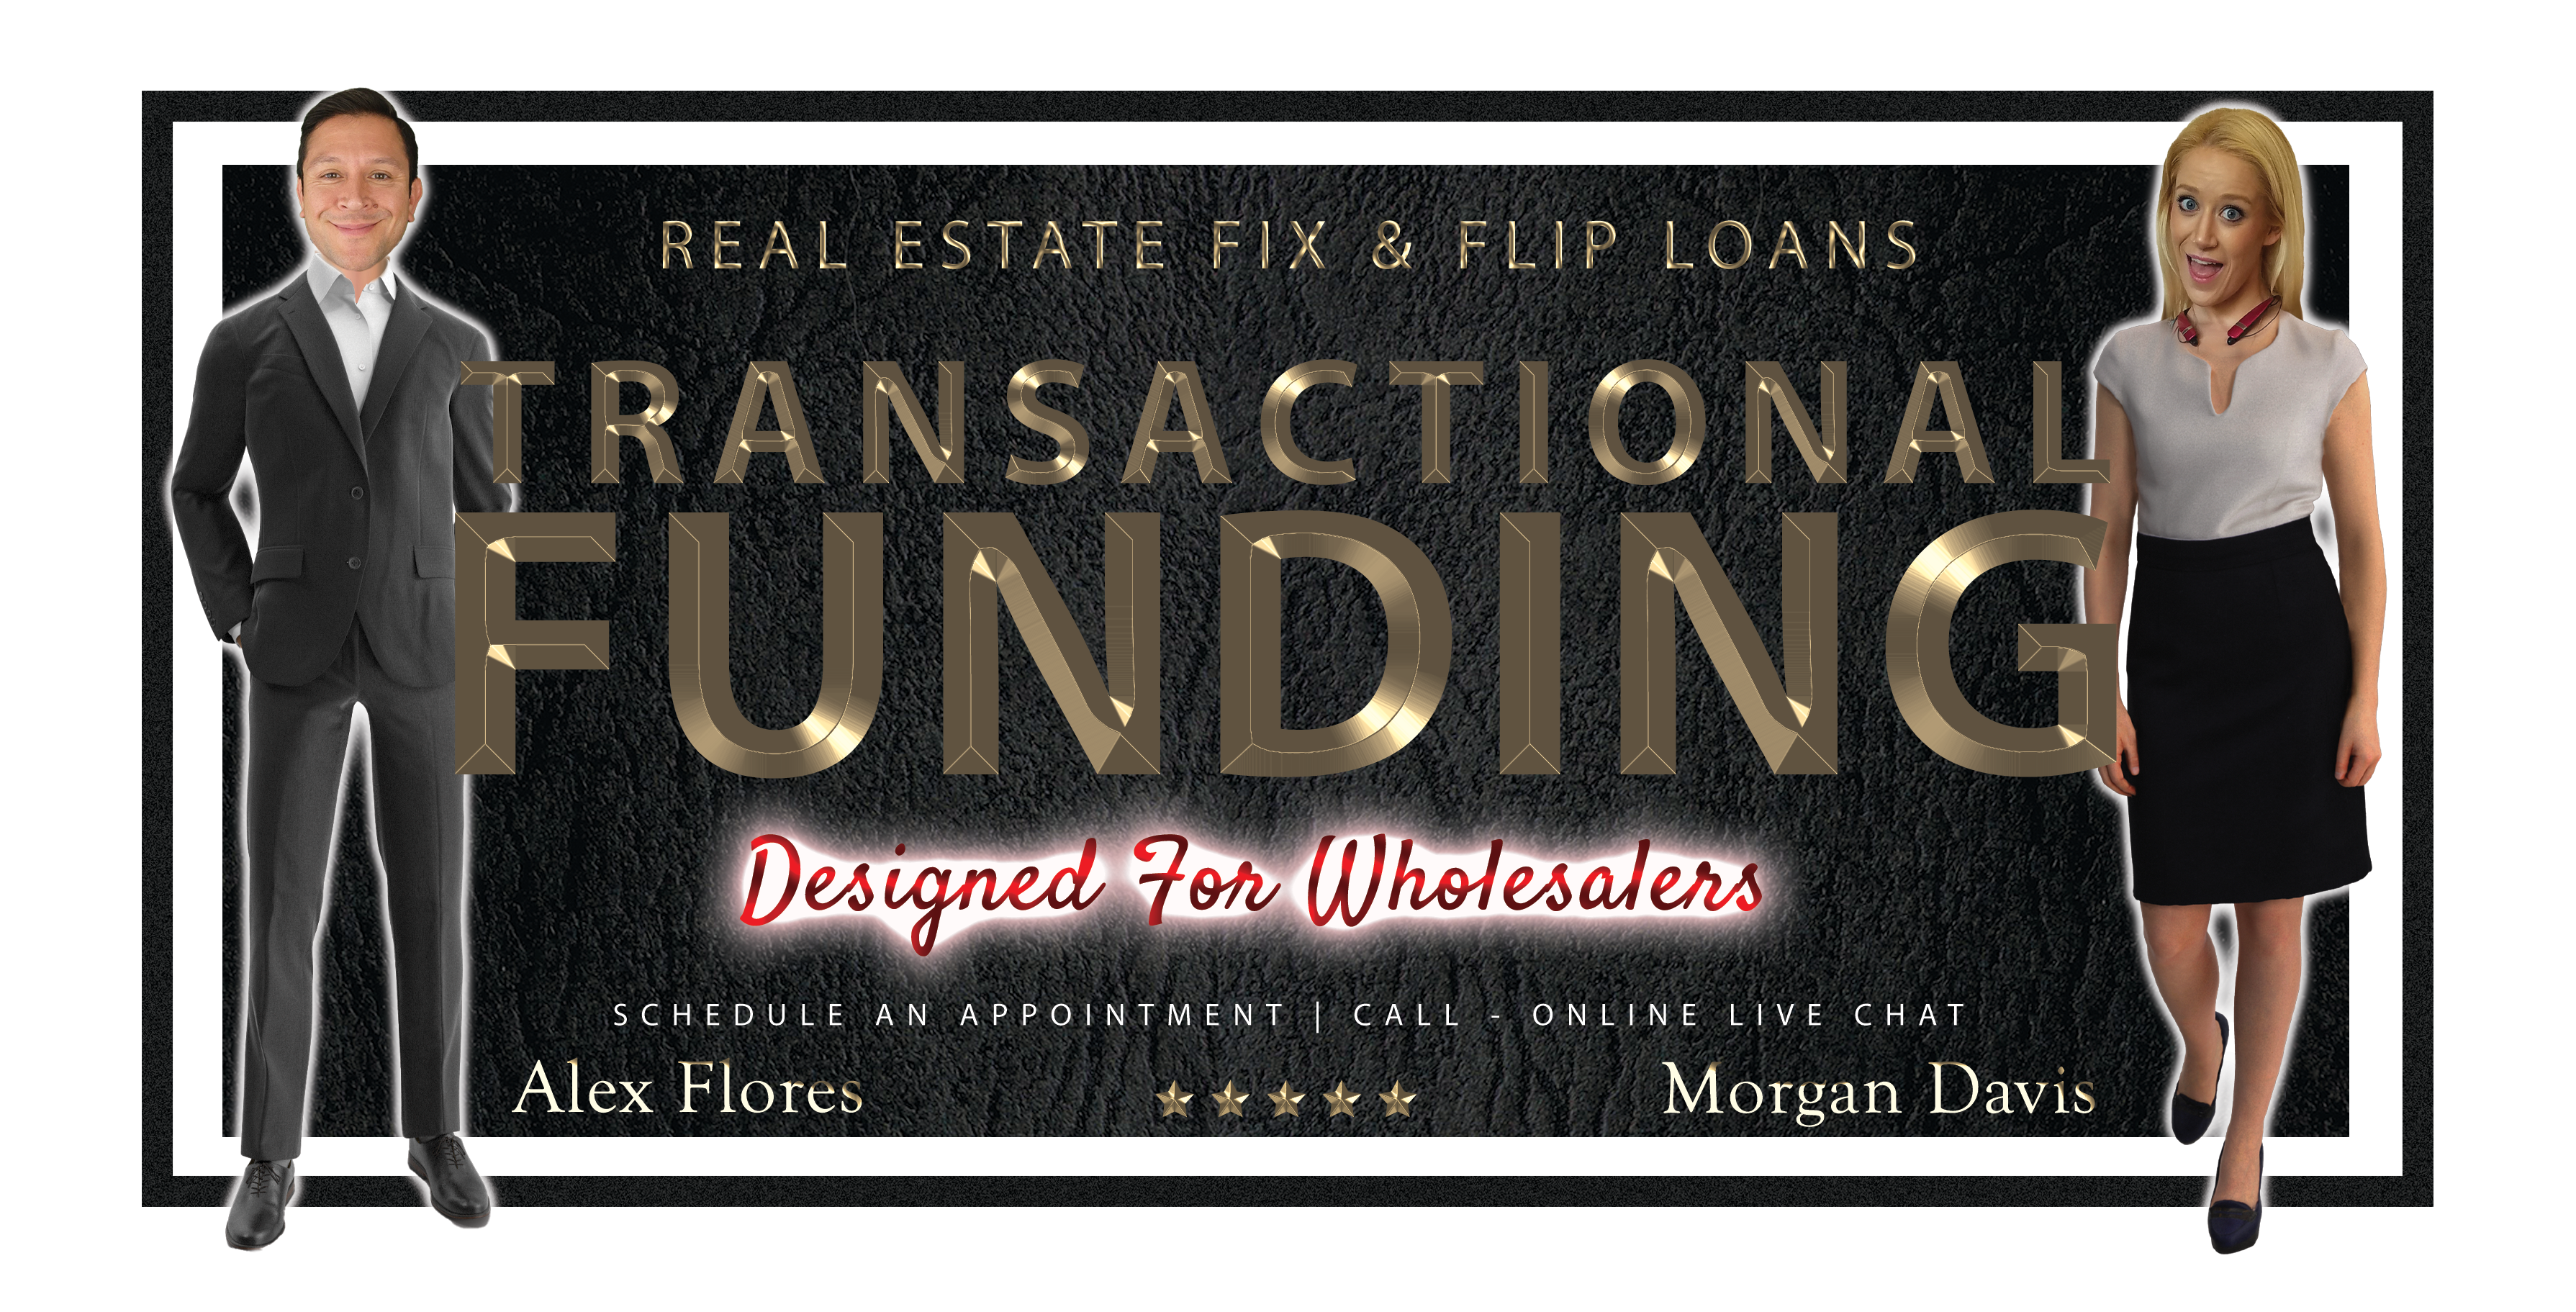 Private Lender Team in Houston Texas - Transactional Funding for Real Estate